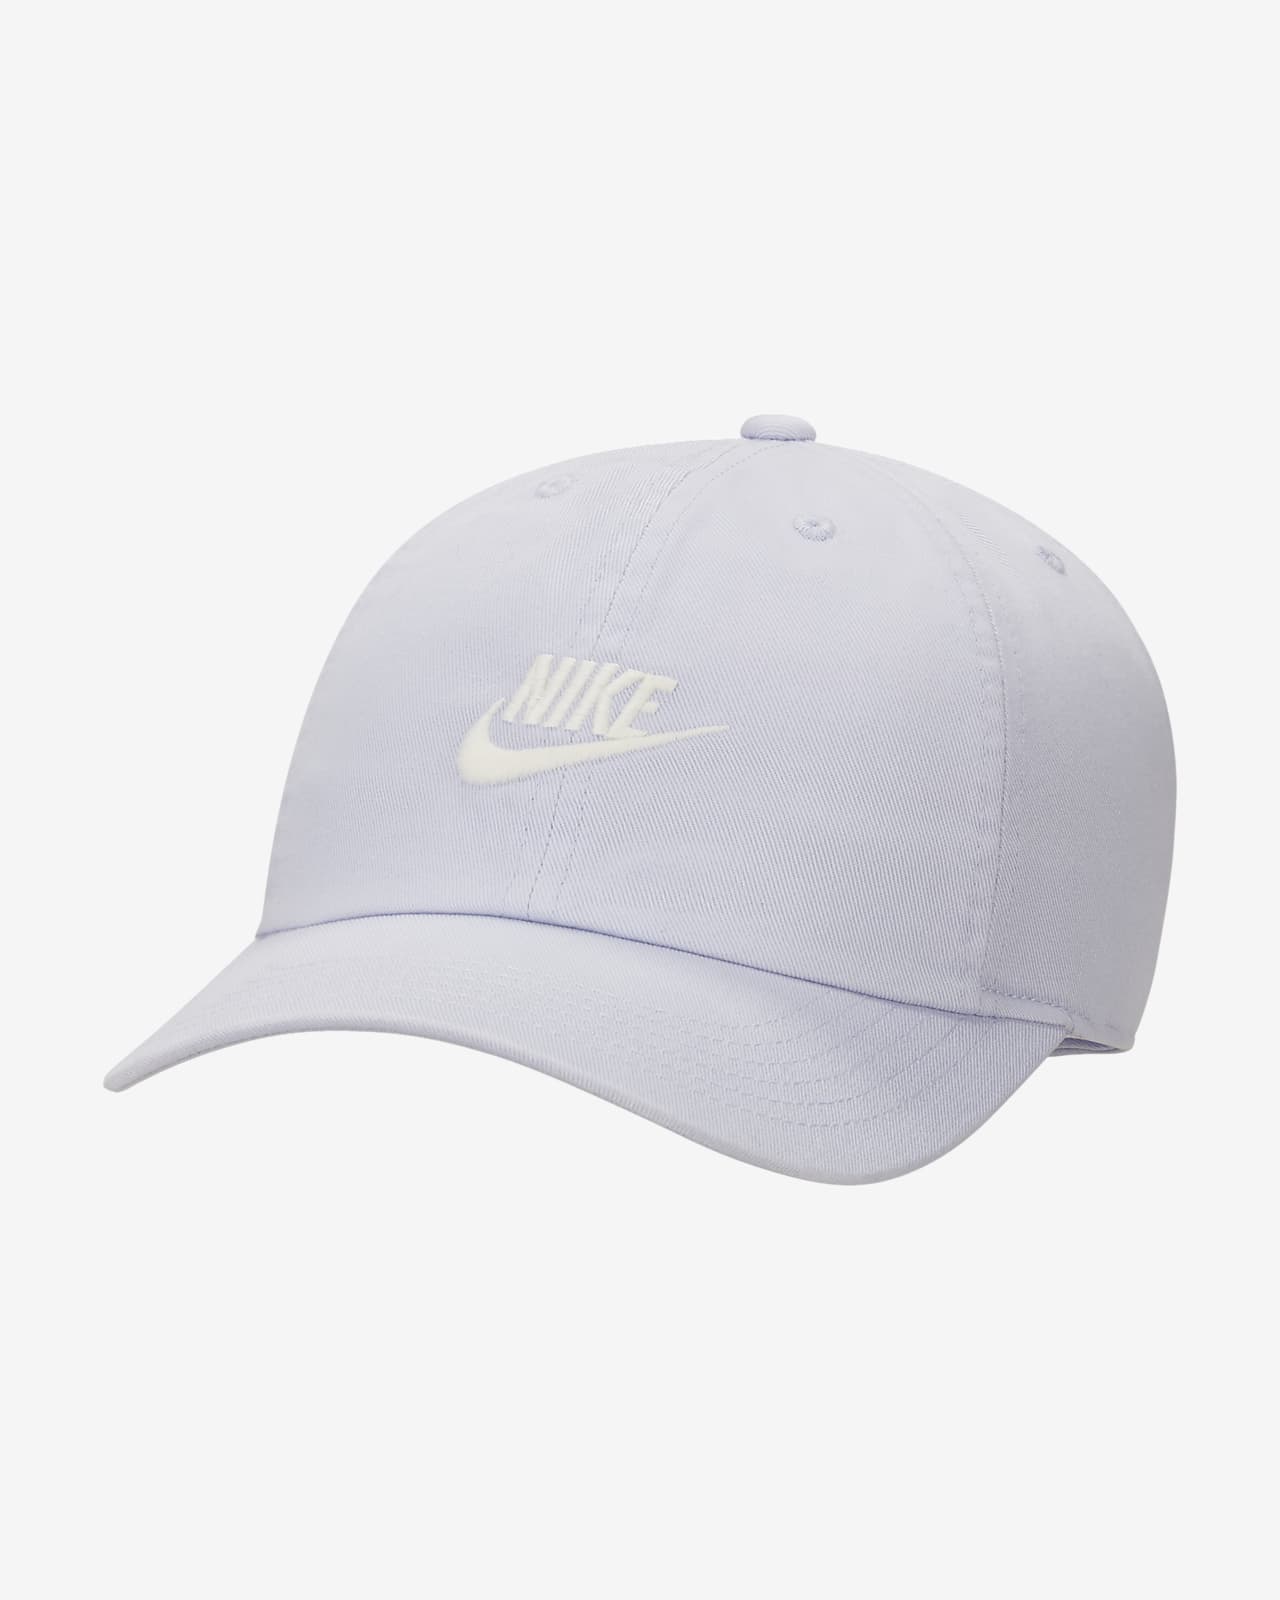 Heritage86 Adjustable Hat. Nike.com